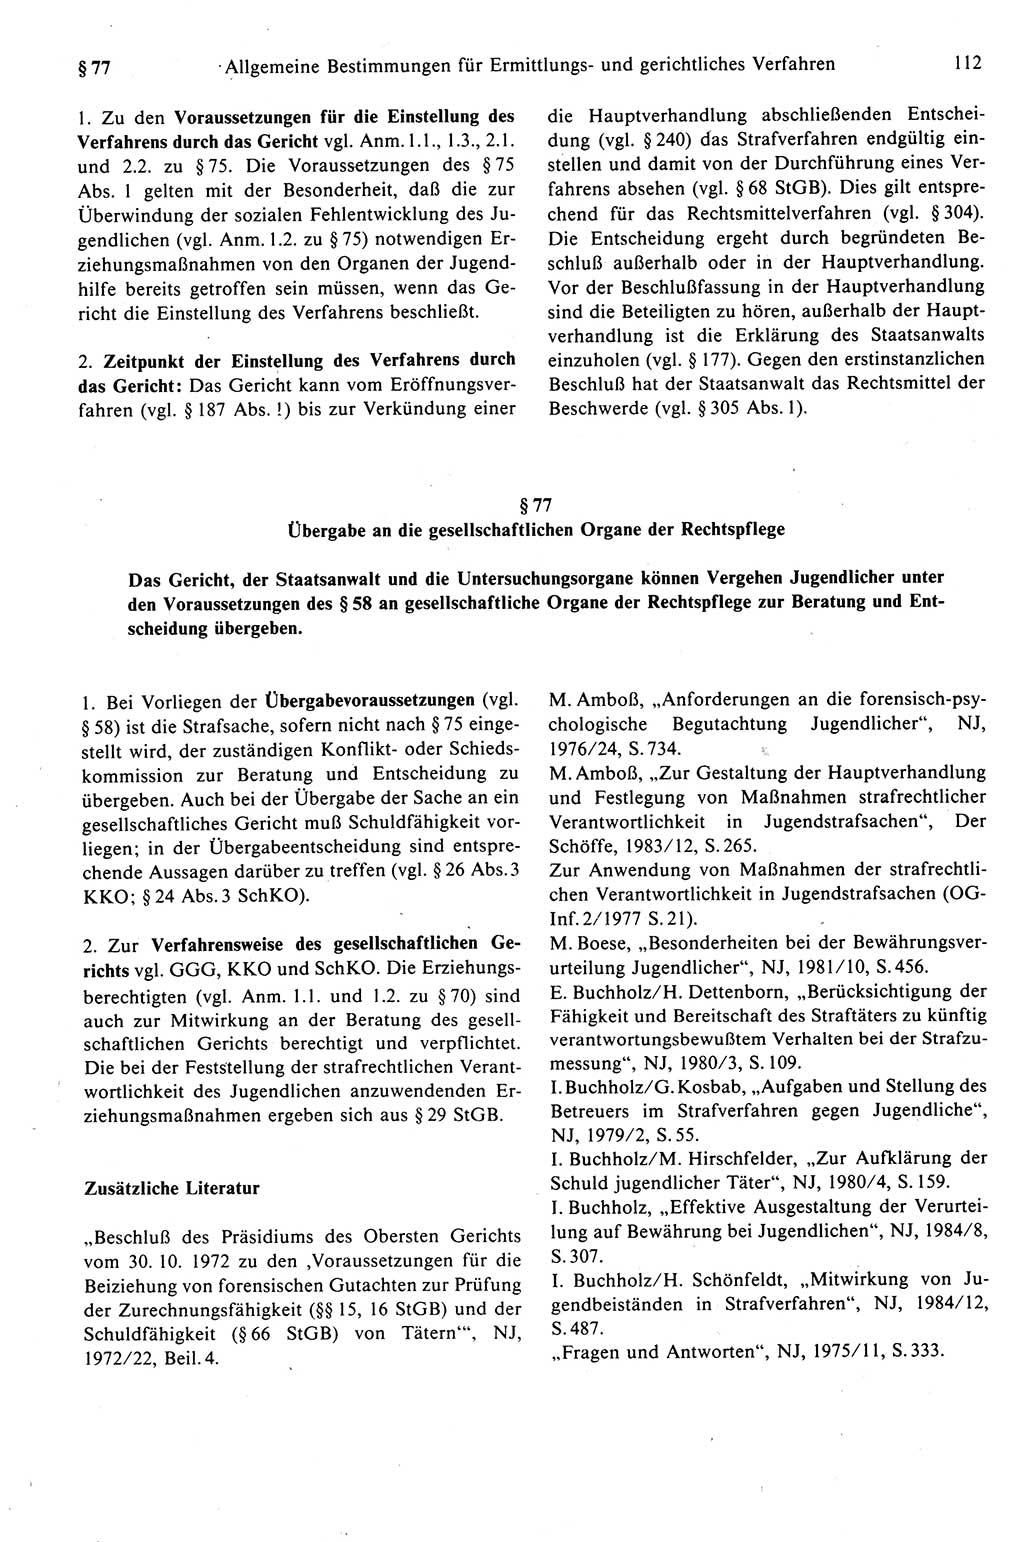 Strafprozeßrecht der DDR (Deutsche Demokratische Republik), Kommentar zur Strafprozeßordnung (StPO) 1989, Seite 112 (Strafprozeßr. DDR Komm. StPO 1989, S. 112)